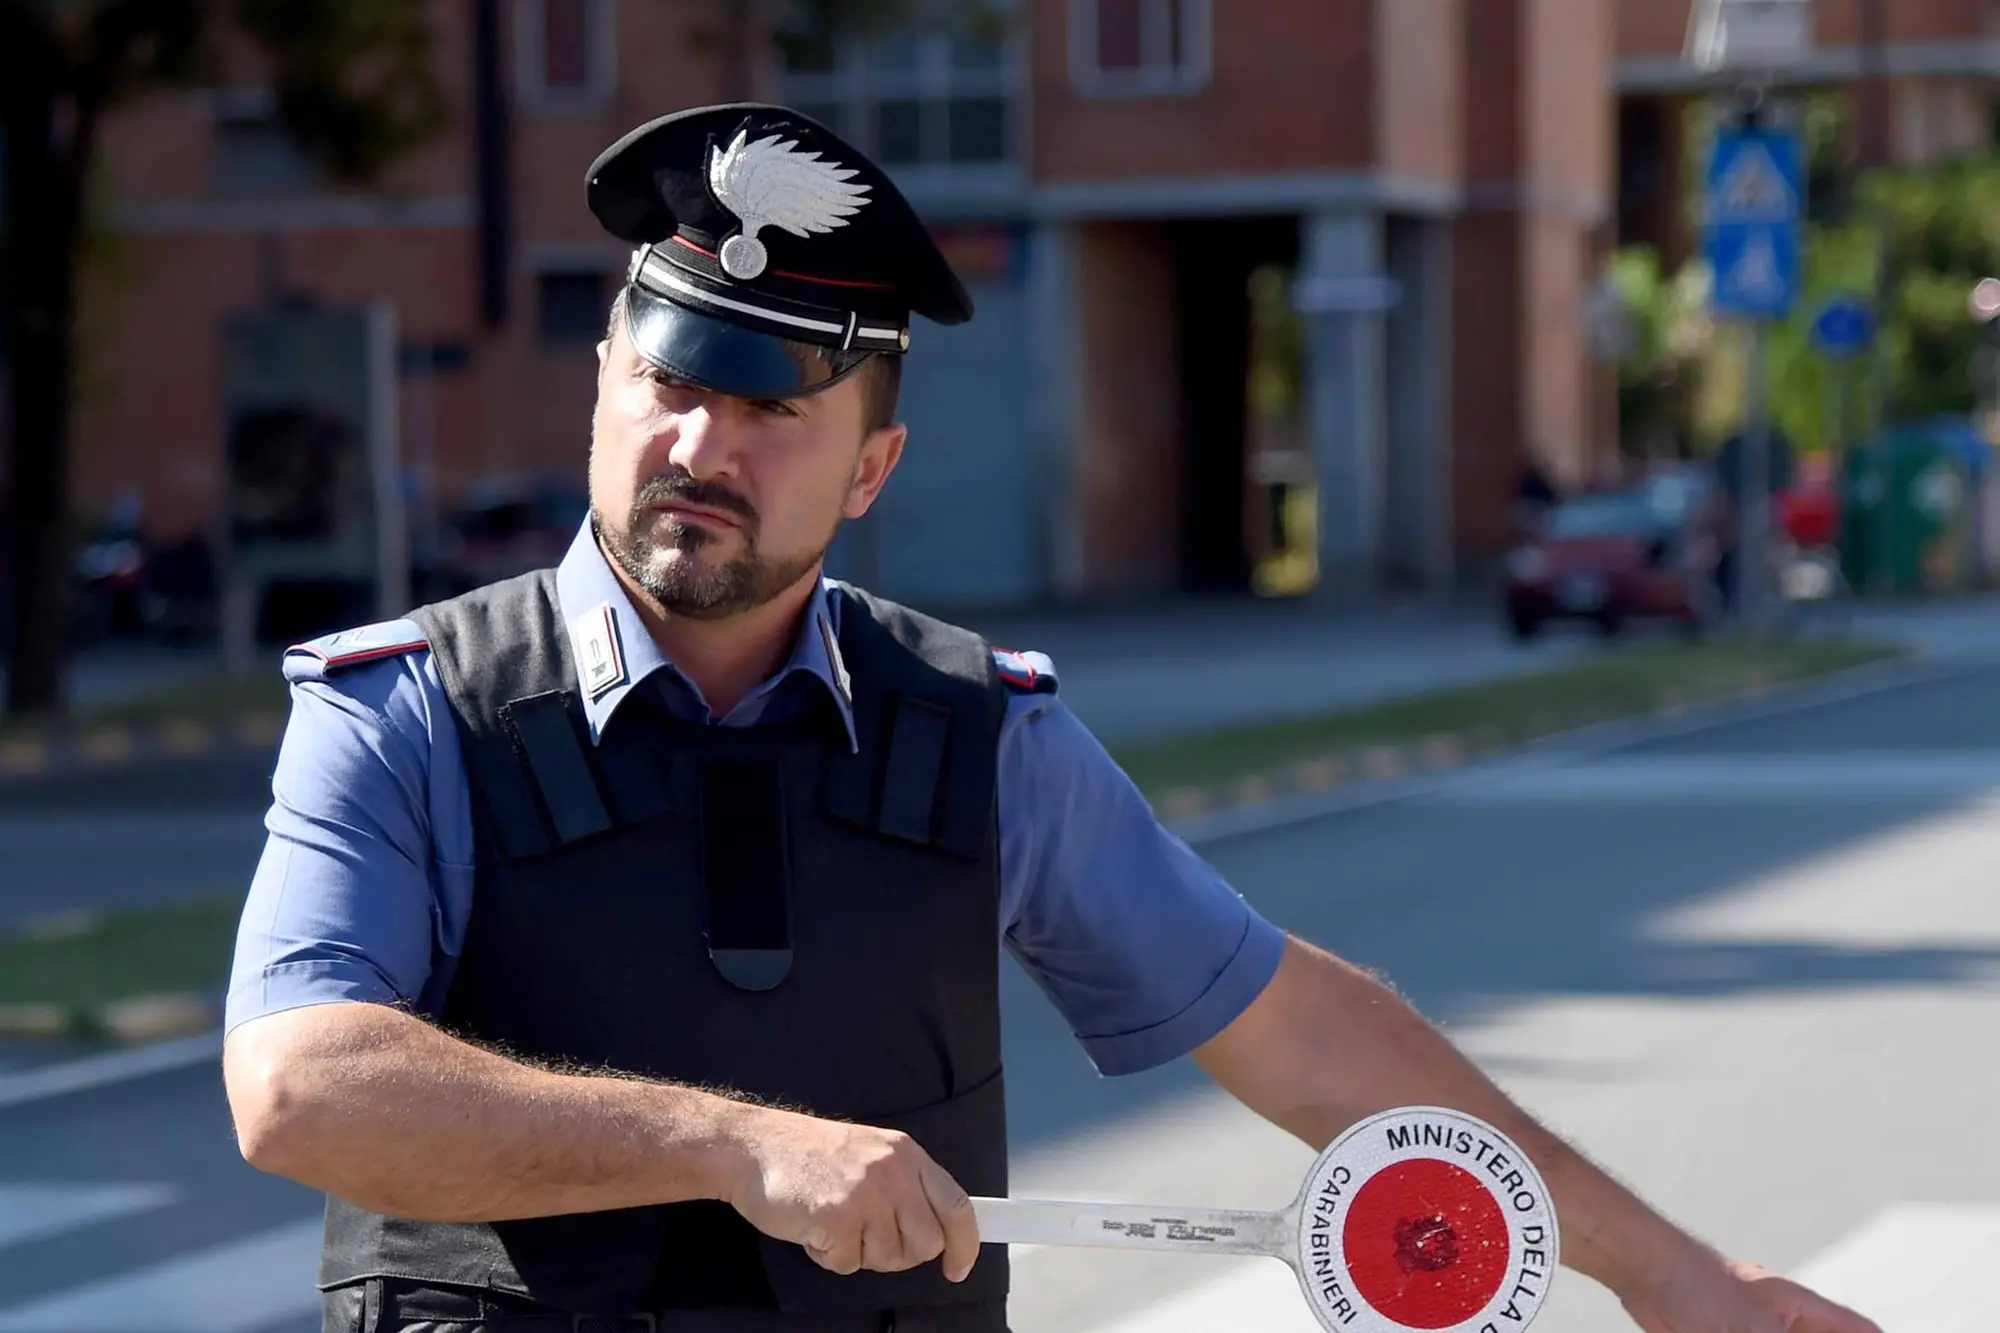 Сант-Антиоко, вождение в нетрезвом виде и без прав (фото Carabinieri)